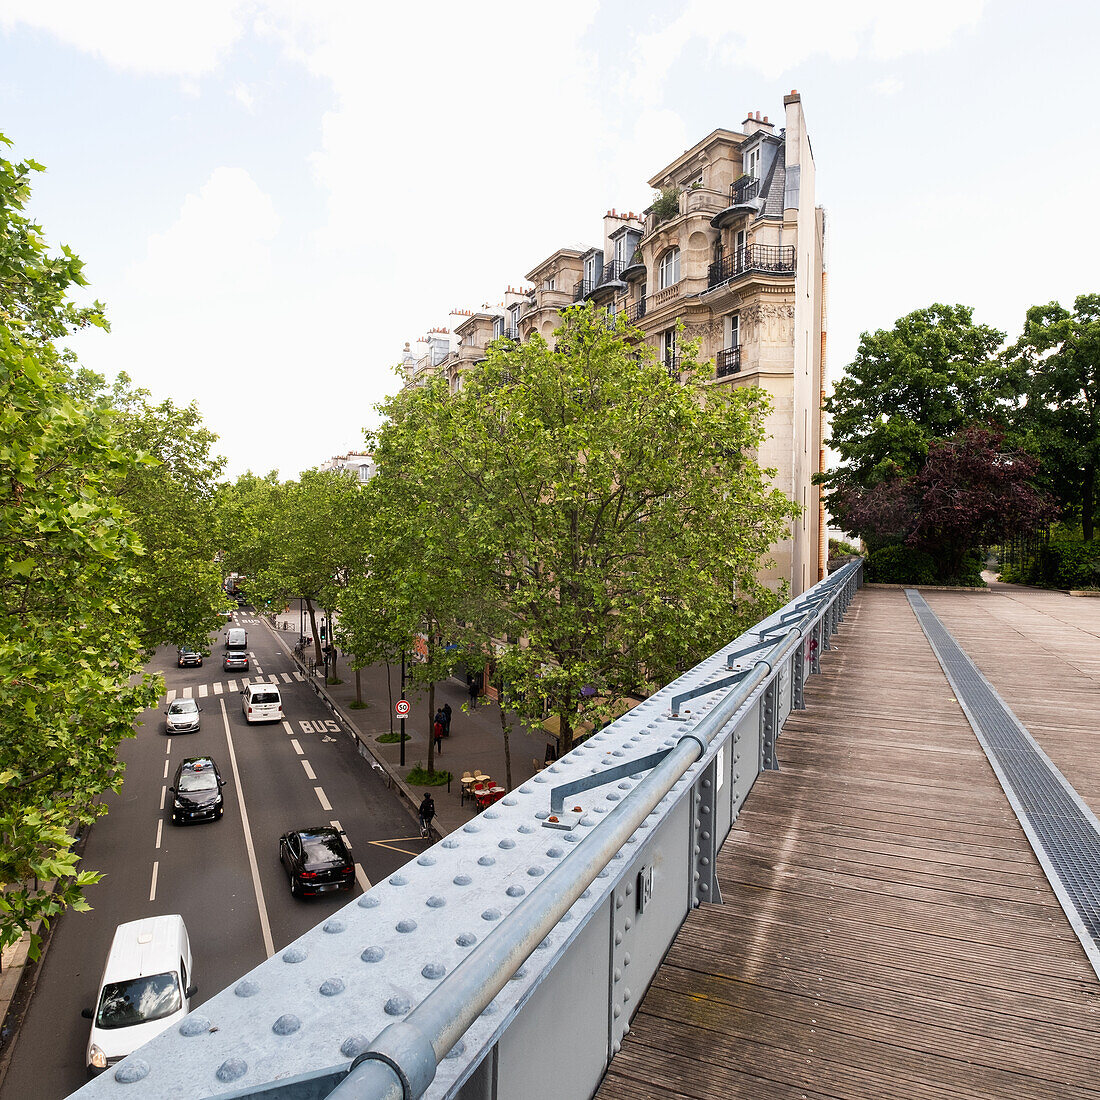 Frankreich, Paris, Fußgängerbrücke über Straße und Verkehr in der Stadt